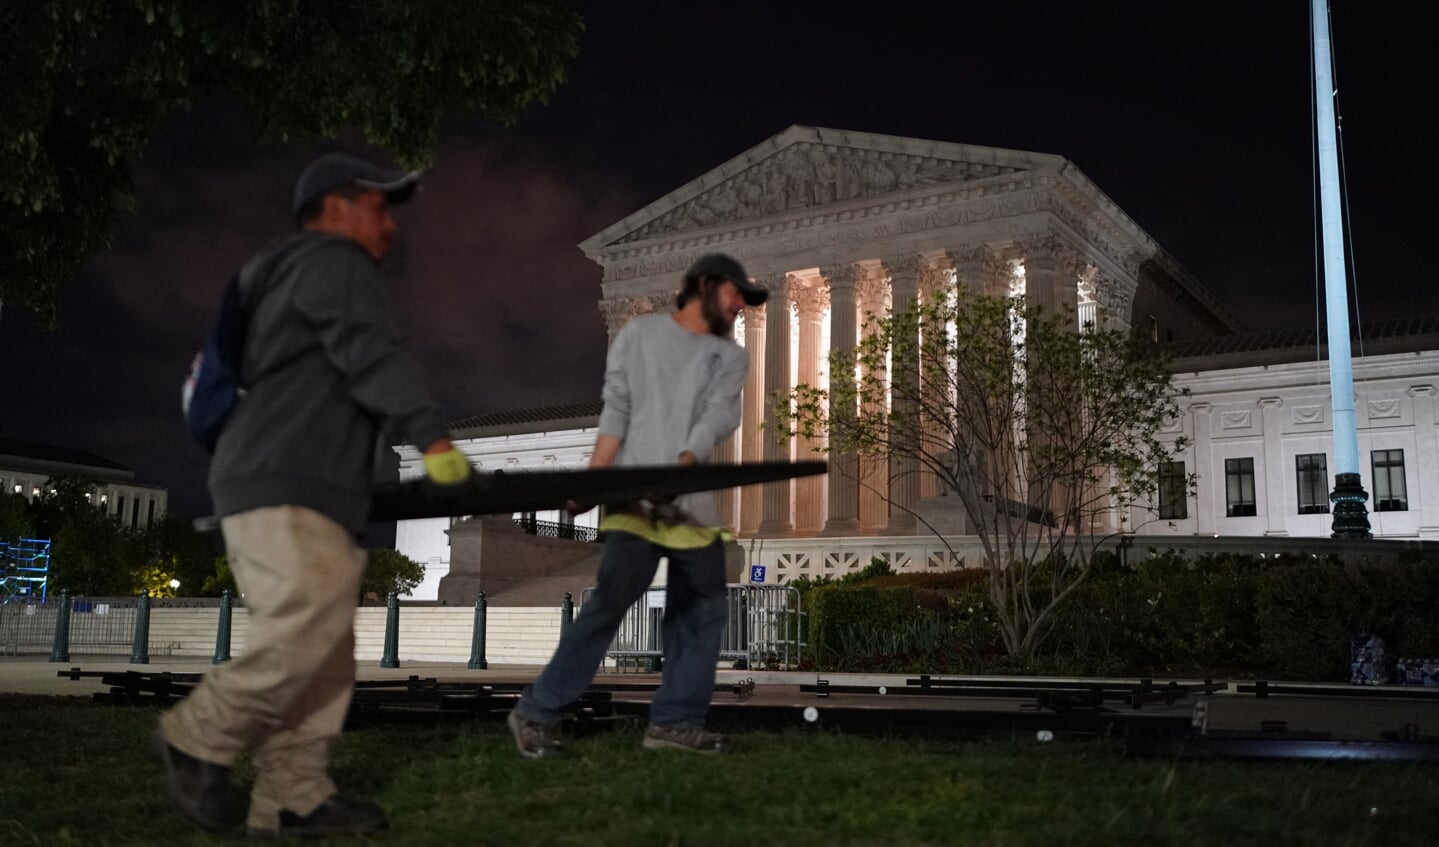 Rondom het Amerikaanse hooggerechtshof in Washington werden op de avond van 4 mei hekken geplaatst in afwachting van een grote demonstratie tegen het uitgelekte, omstreden vonnis van het hof over abortuswetgeving.